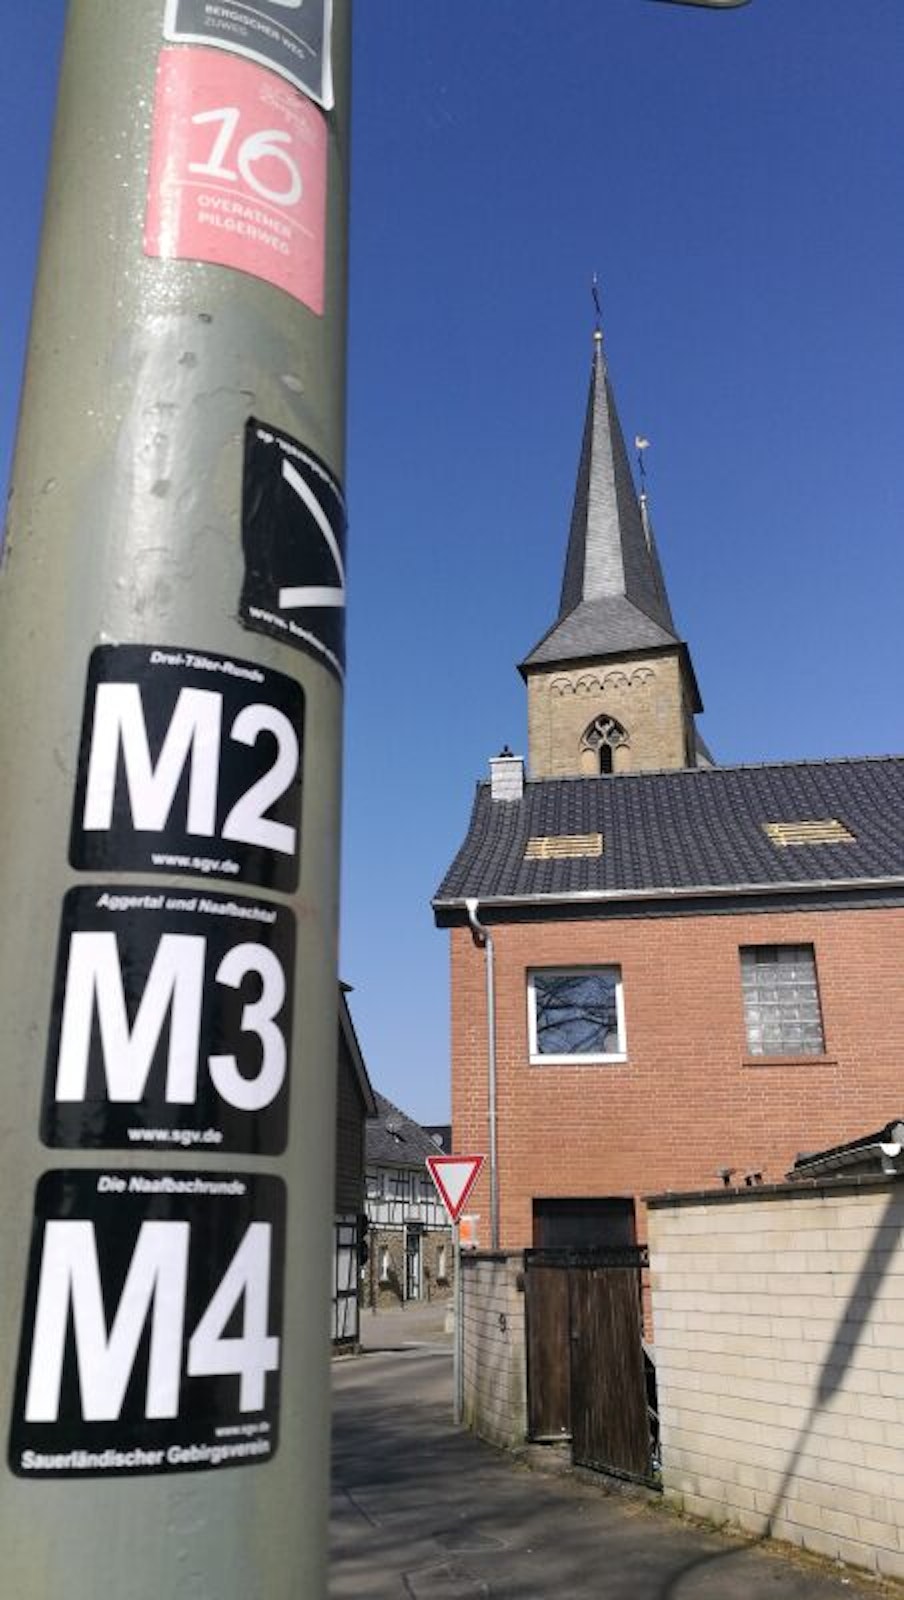  Erstmals im Gelände ausgewiesen werden dabei die vier seit 2015 bestehenden Marialindener Rundwanderwege M1 bis M4.